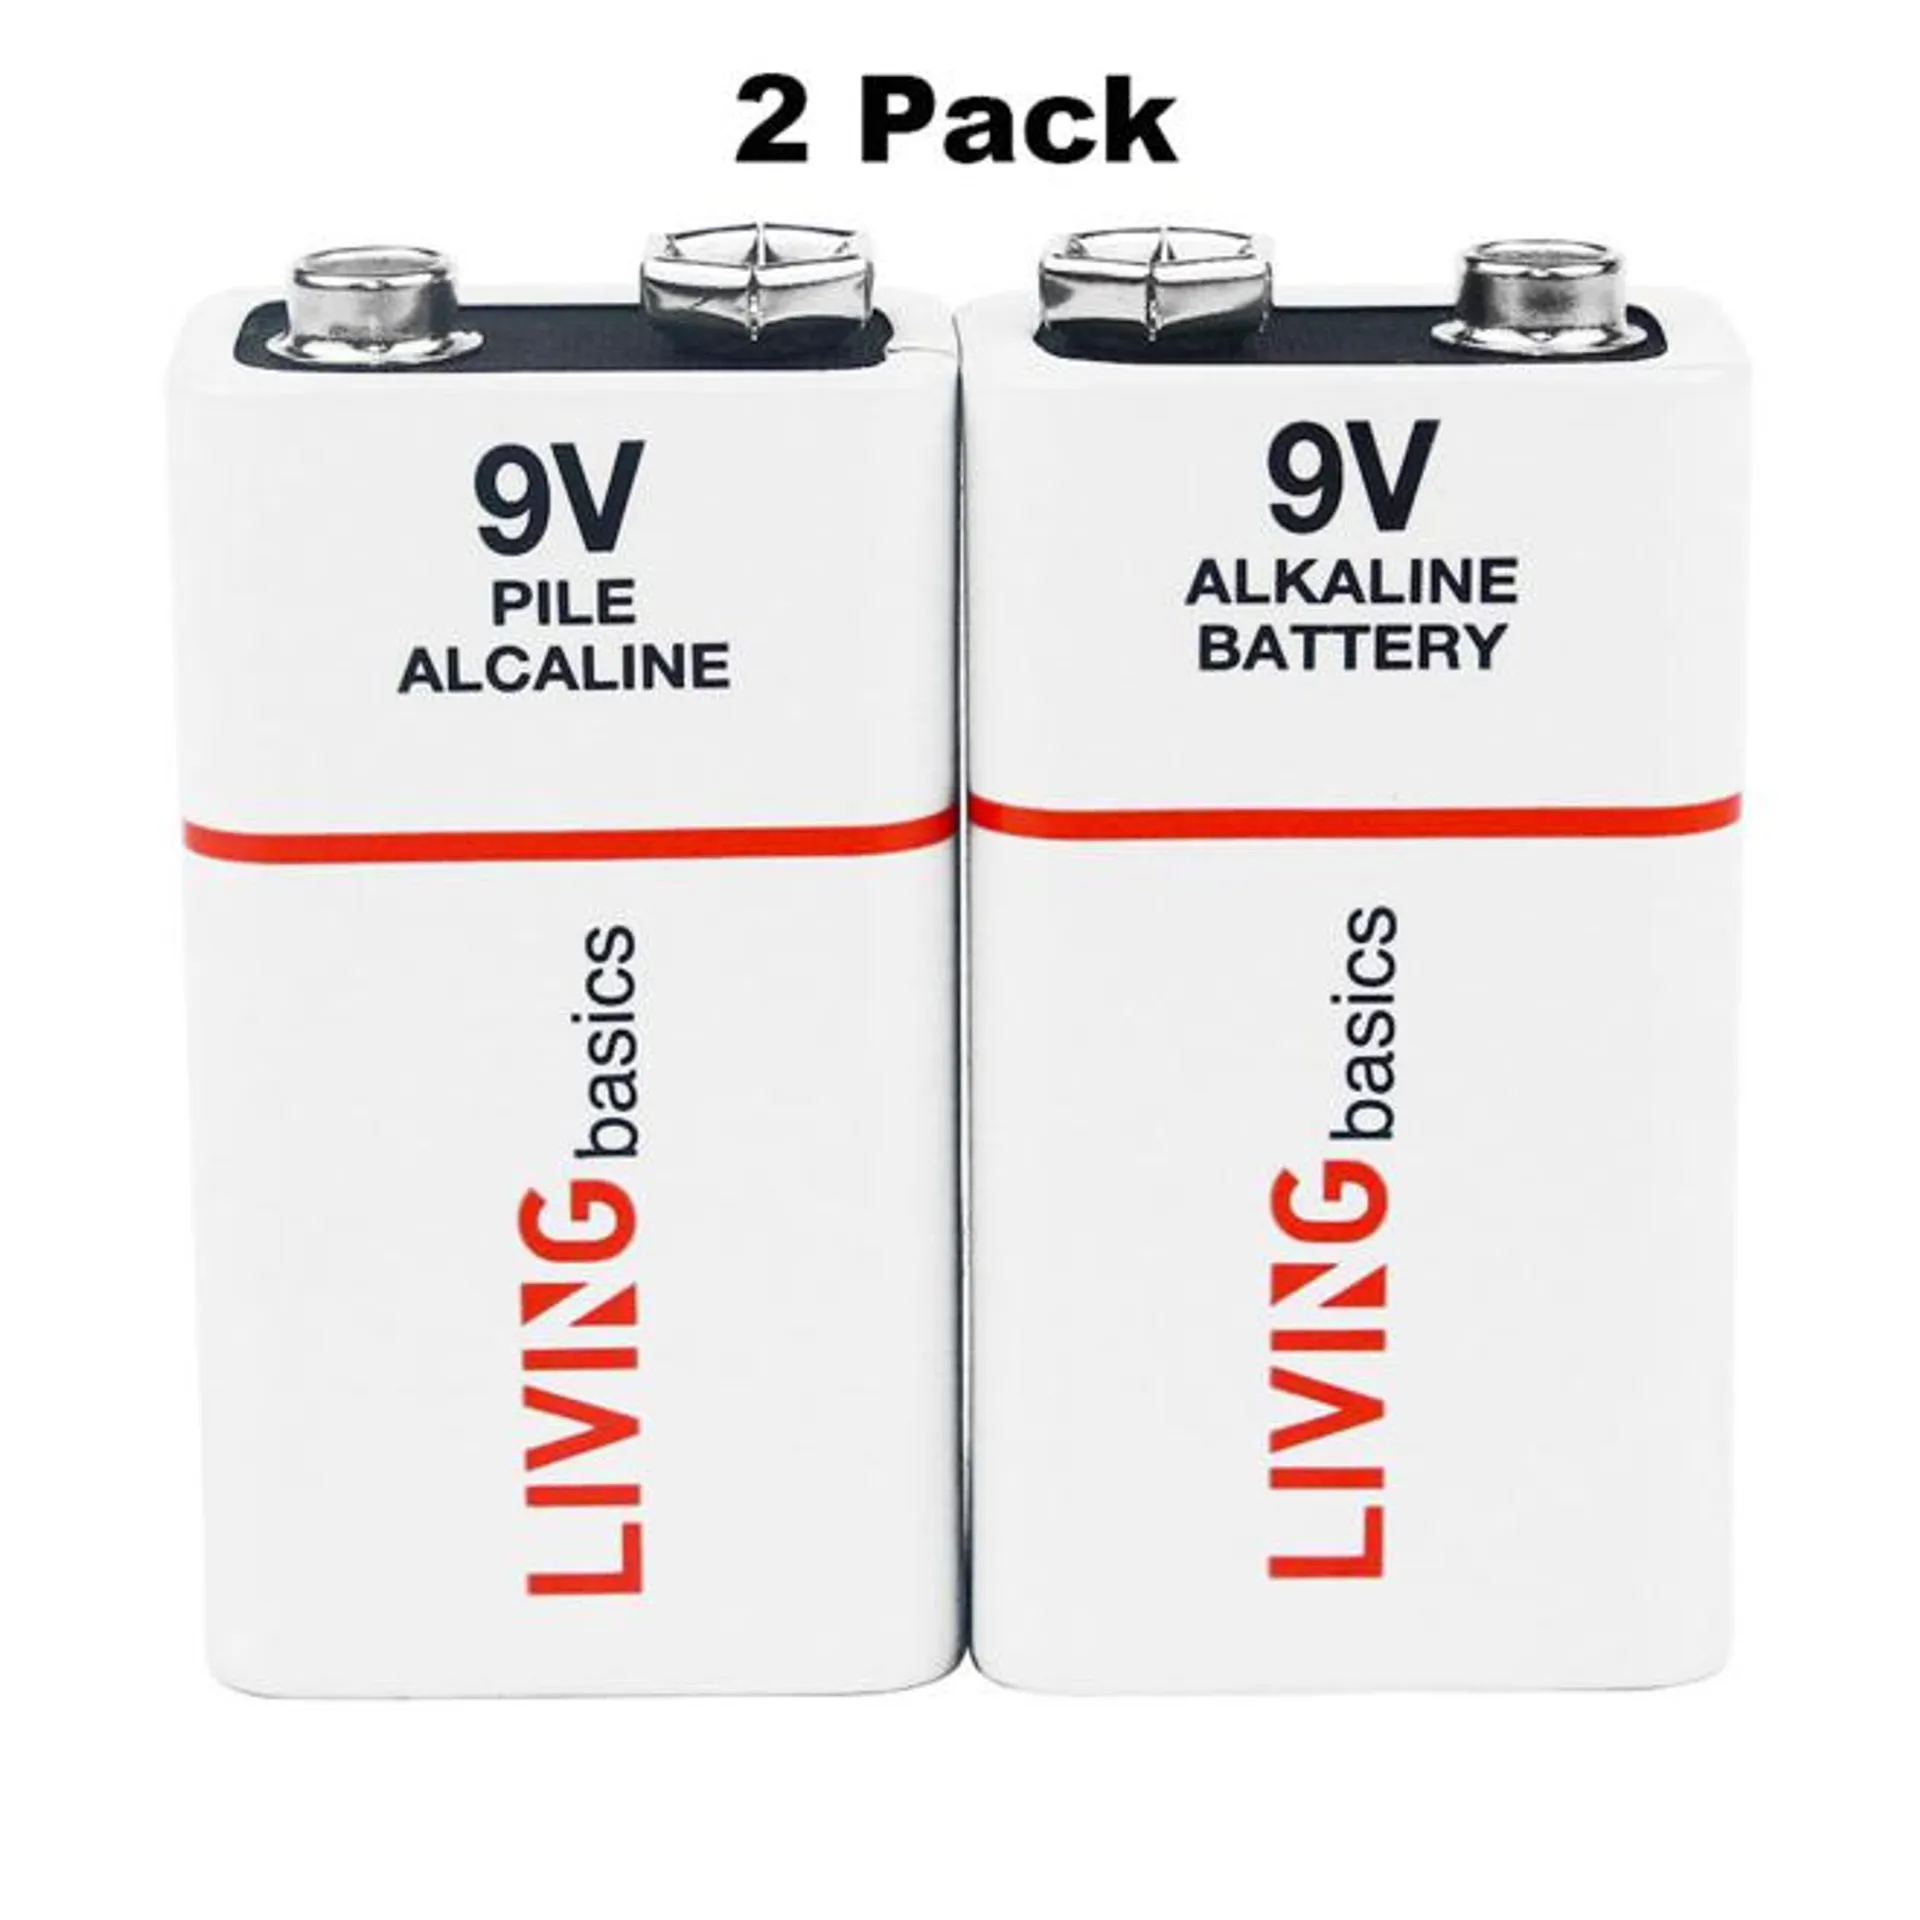 9V Alkaline Battery Single Blister Card 2Pcs/Pack - LIVINGbasics®